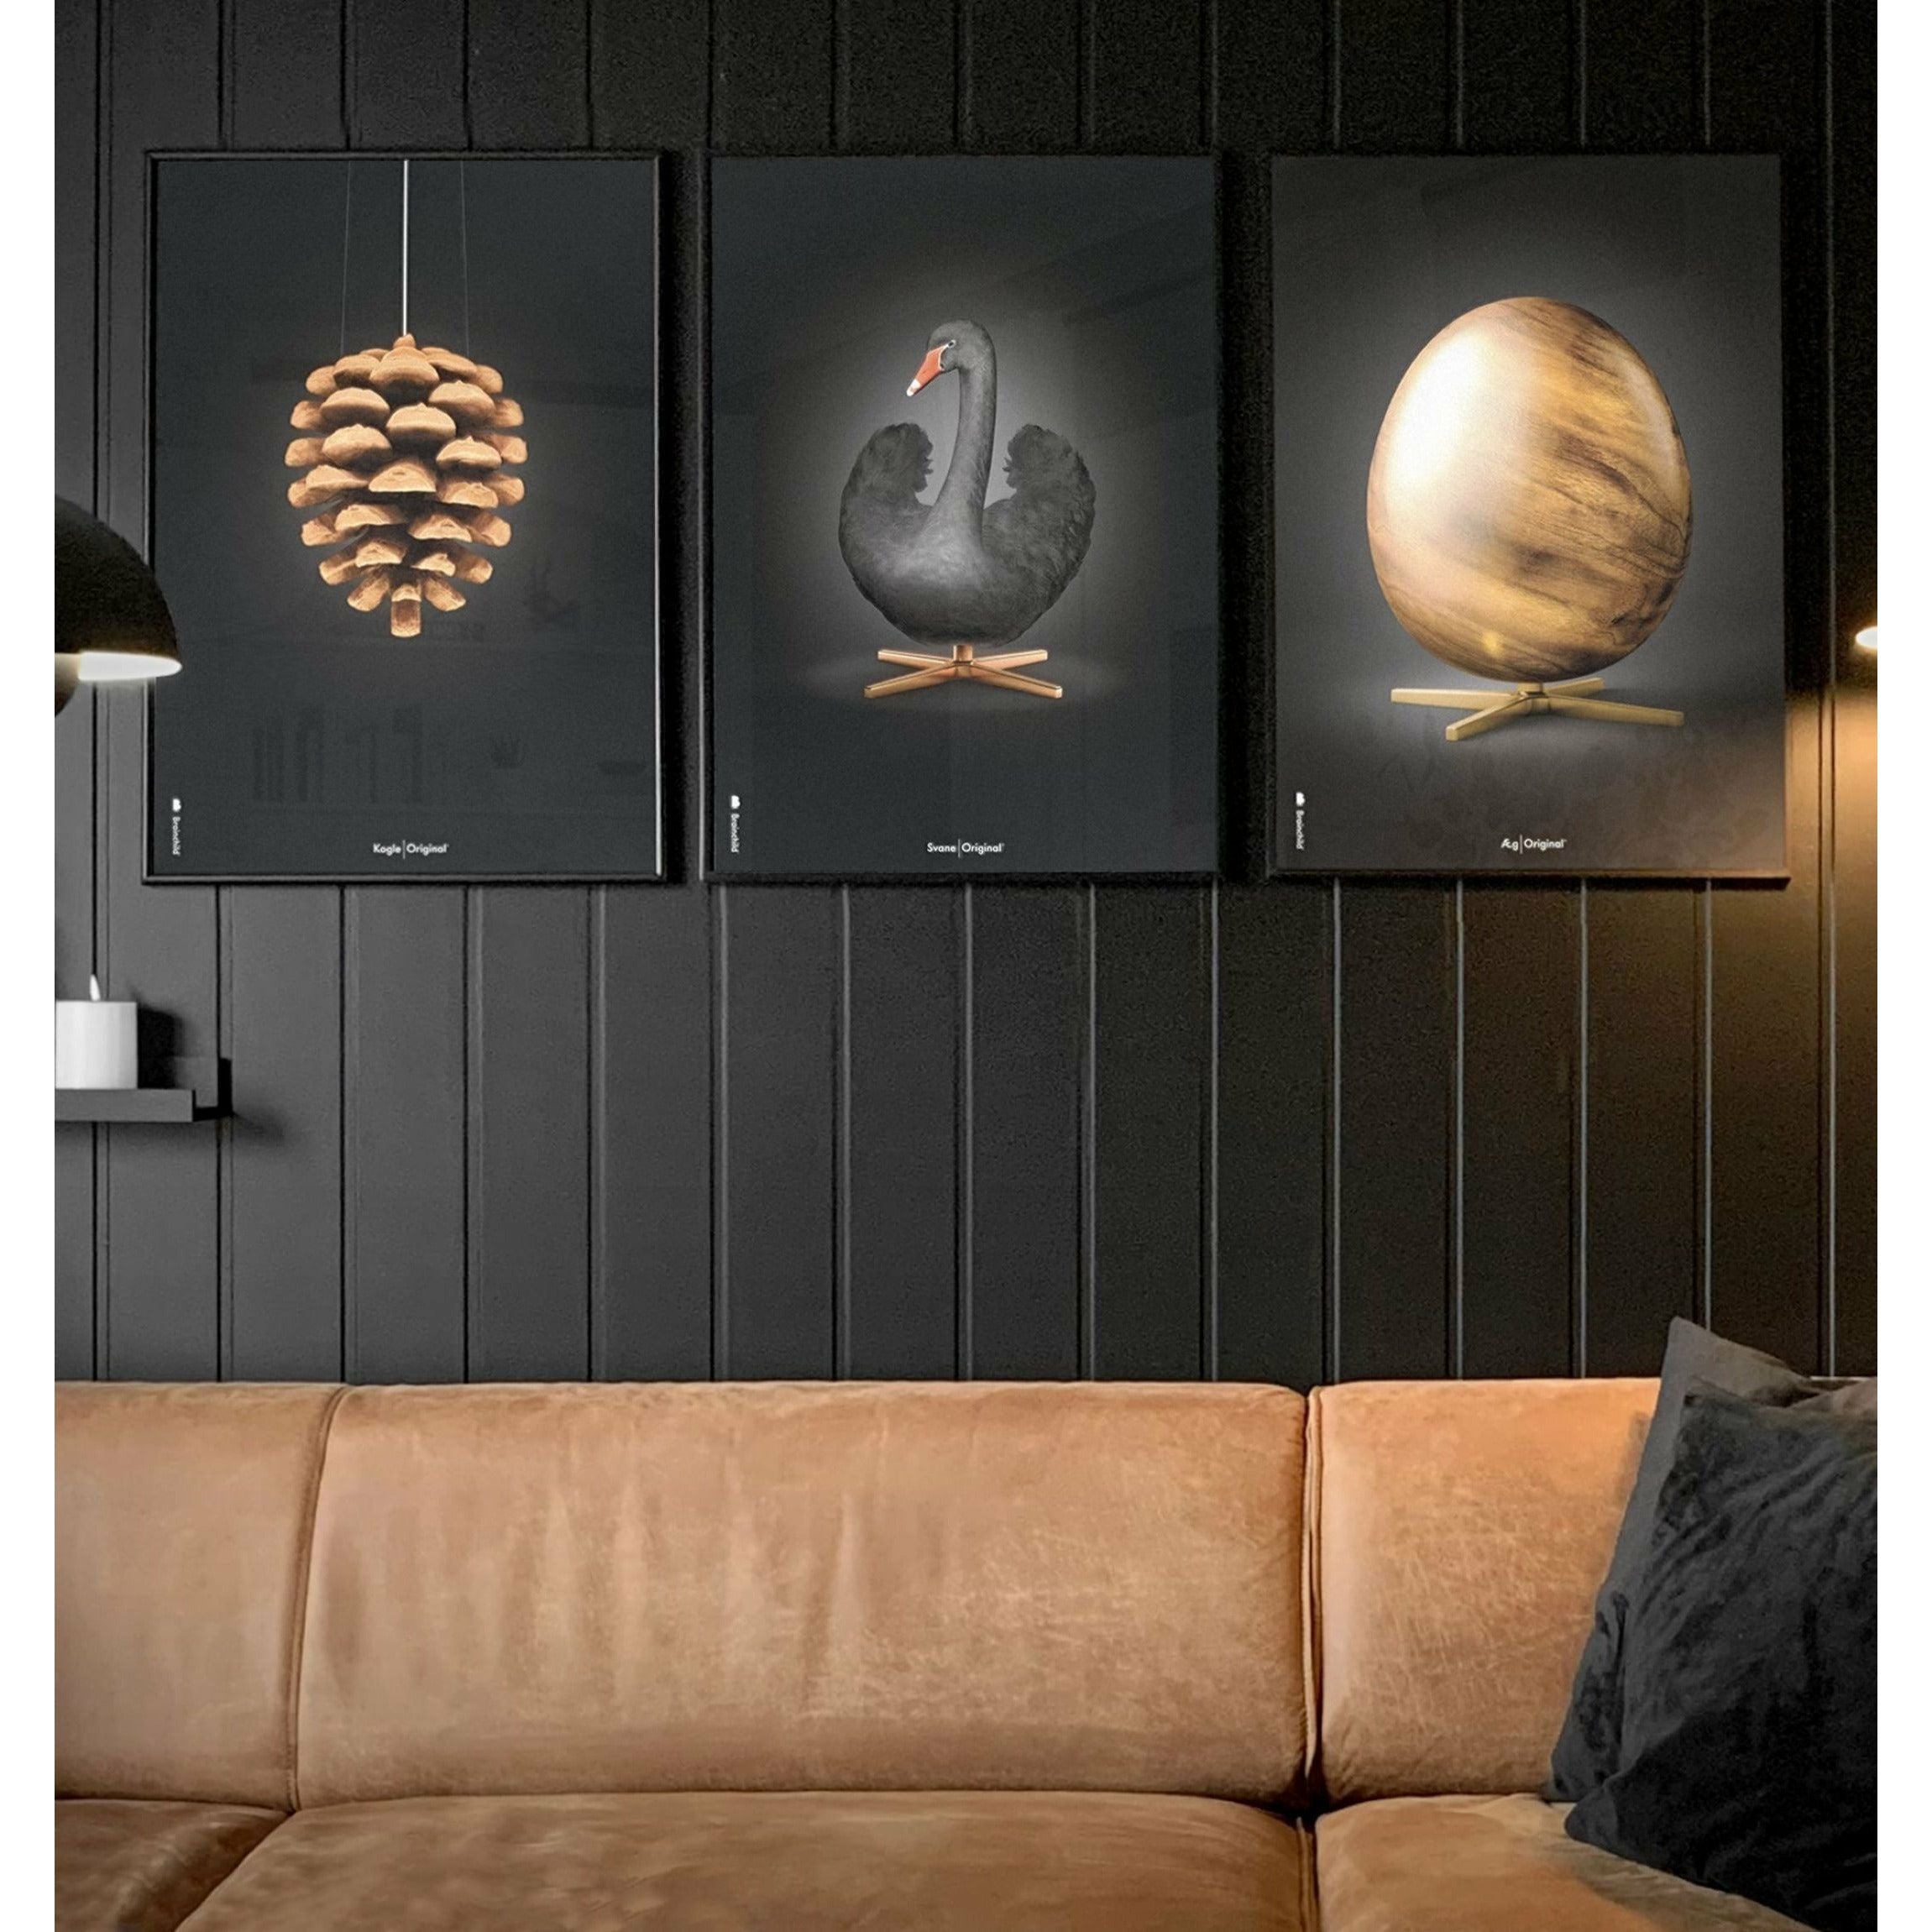 brainchild Swan Classic Poster, Dark Wood Frame 70 x100 cm, zwart/zwarte achtergrond